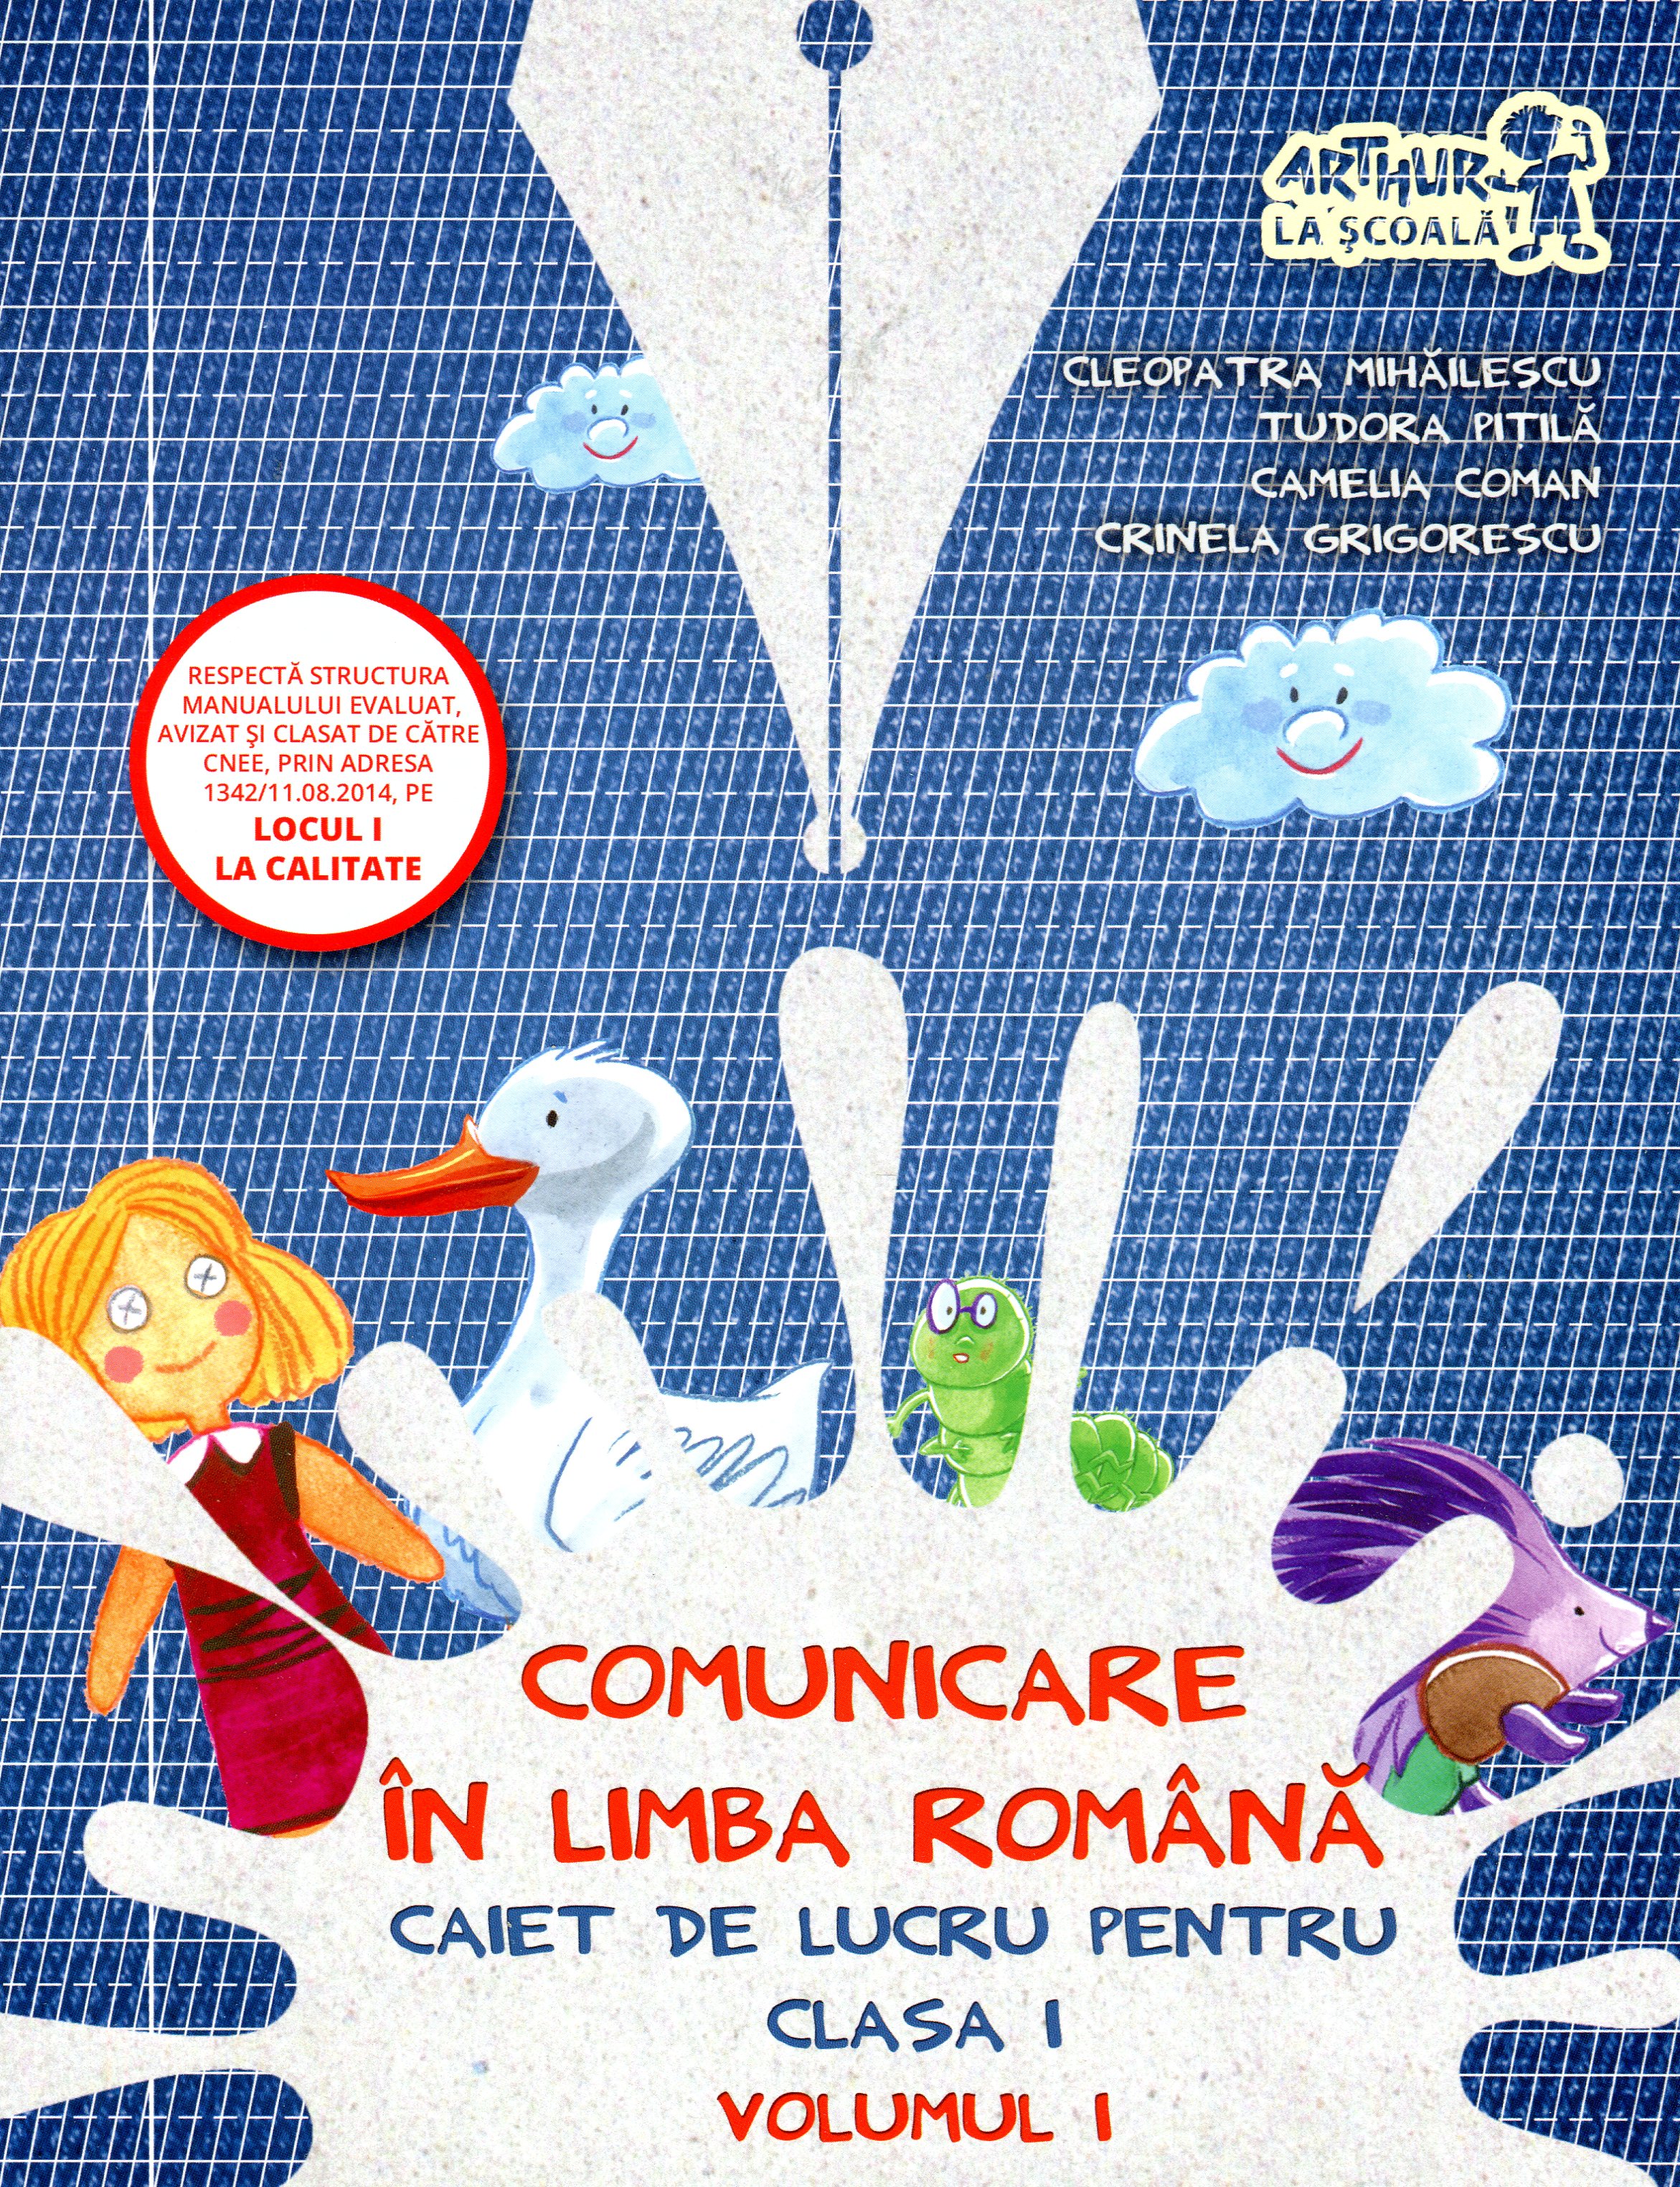 Comunicare in limba romana - Clasa 1. Vol. 1 - Caiet de lucru - Cleopatra Mihailescu, Tudora Pitila